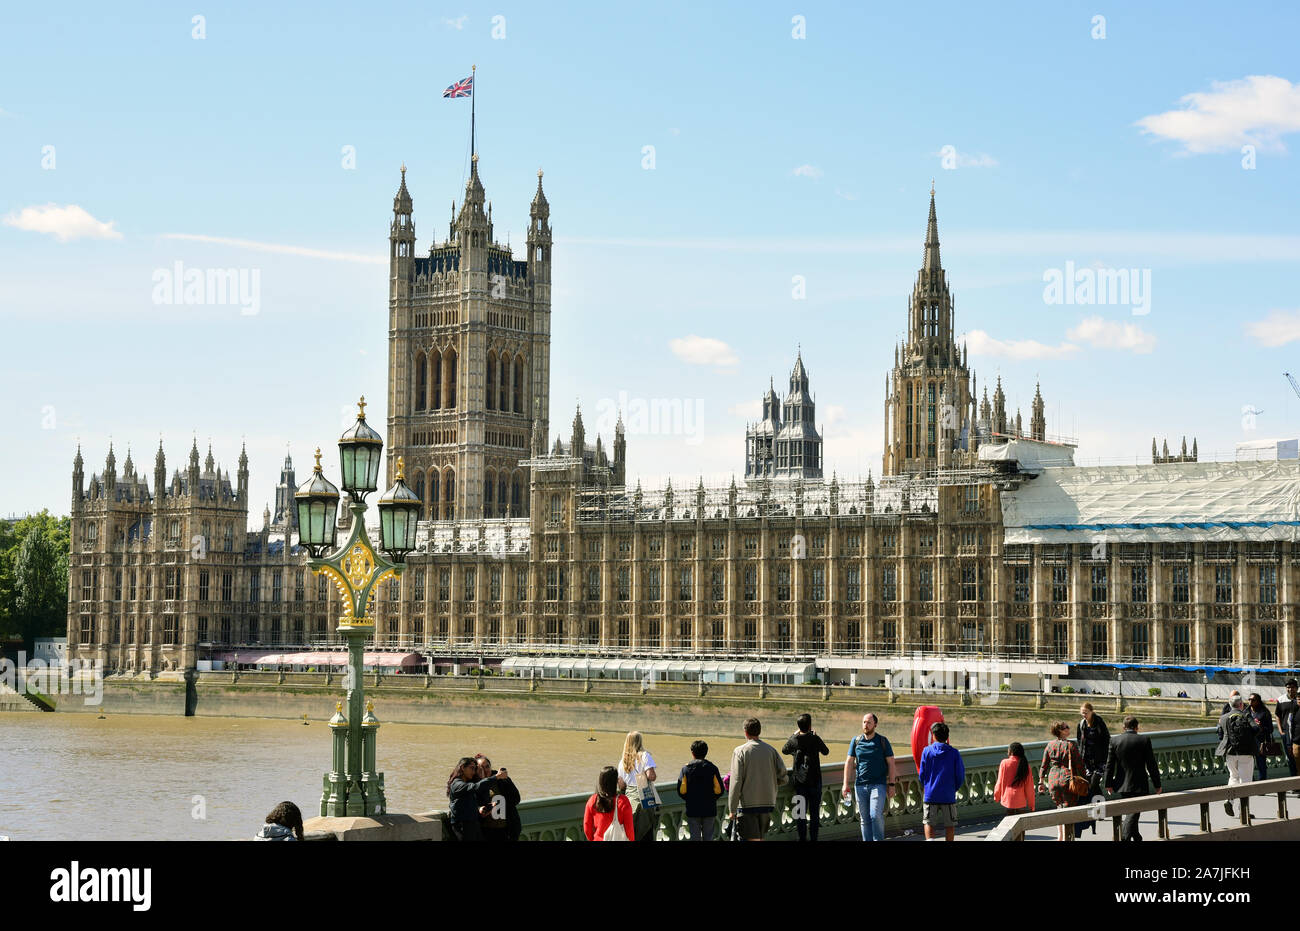 Il 05 settembre 2019, la Gran Bretagna, Londra: Vista del Palazzo di Westminster, il palazzo del parlamento con la torre di Victoria (in background). Il Palazzo di Westminster è stata ricostruita dopo un incendio nel 1834 negli anni 1840-1888 in stile neo-gotico nel vecchio posto. Foto: Waltraud Grubitzsch/dpa Foto Stock